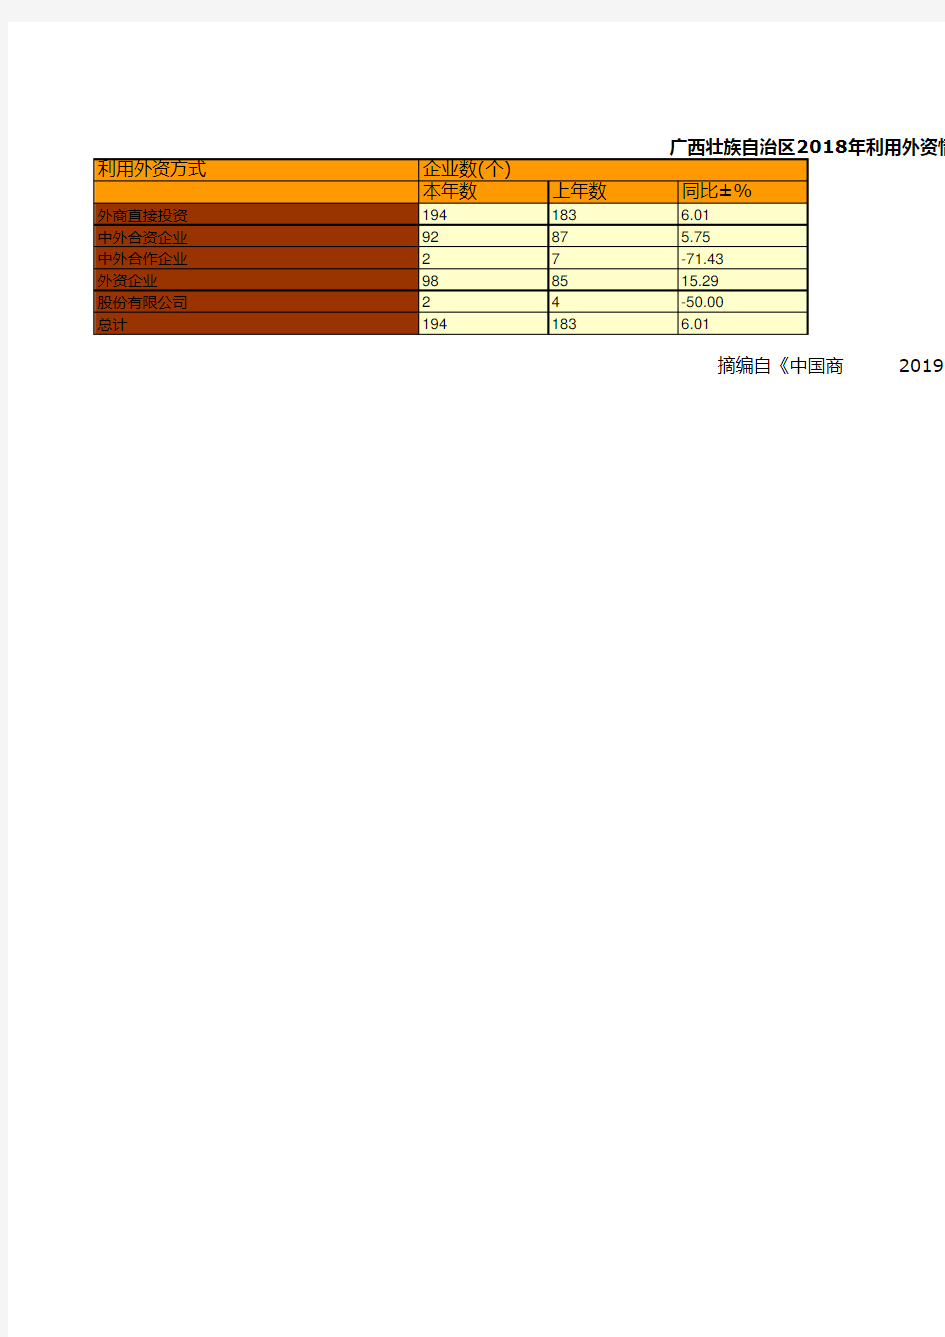 商务年鉴全国各省市区数据：广西壮族自治区2018年利用外资情况统计